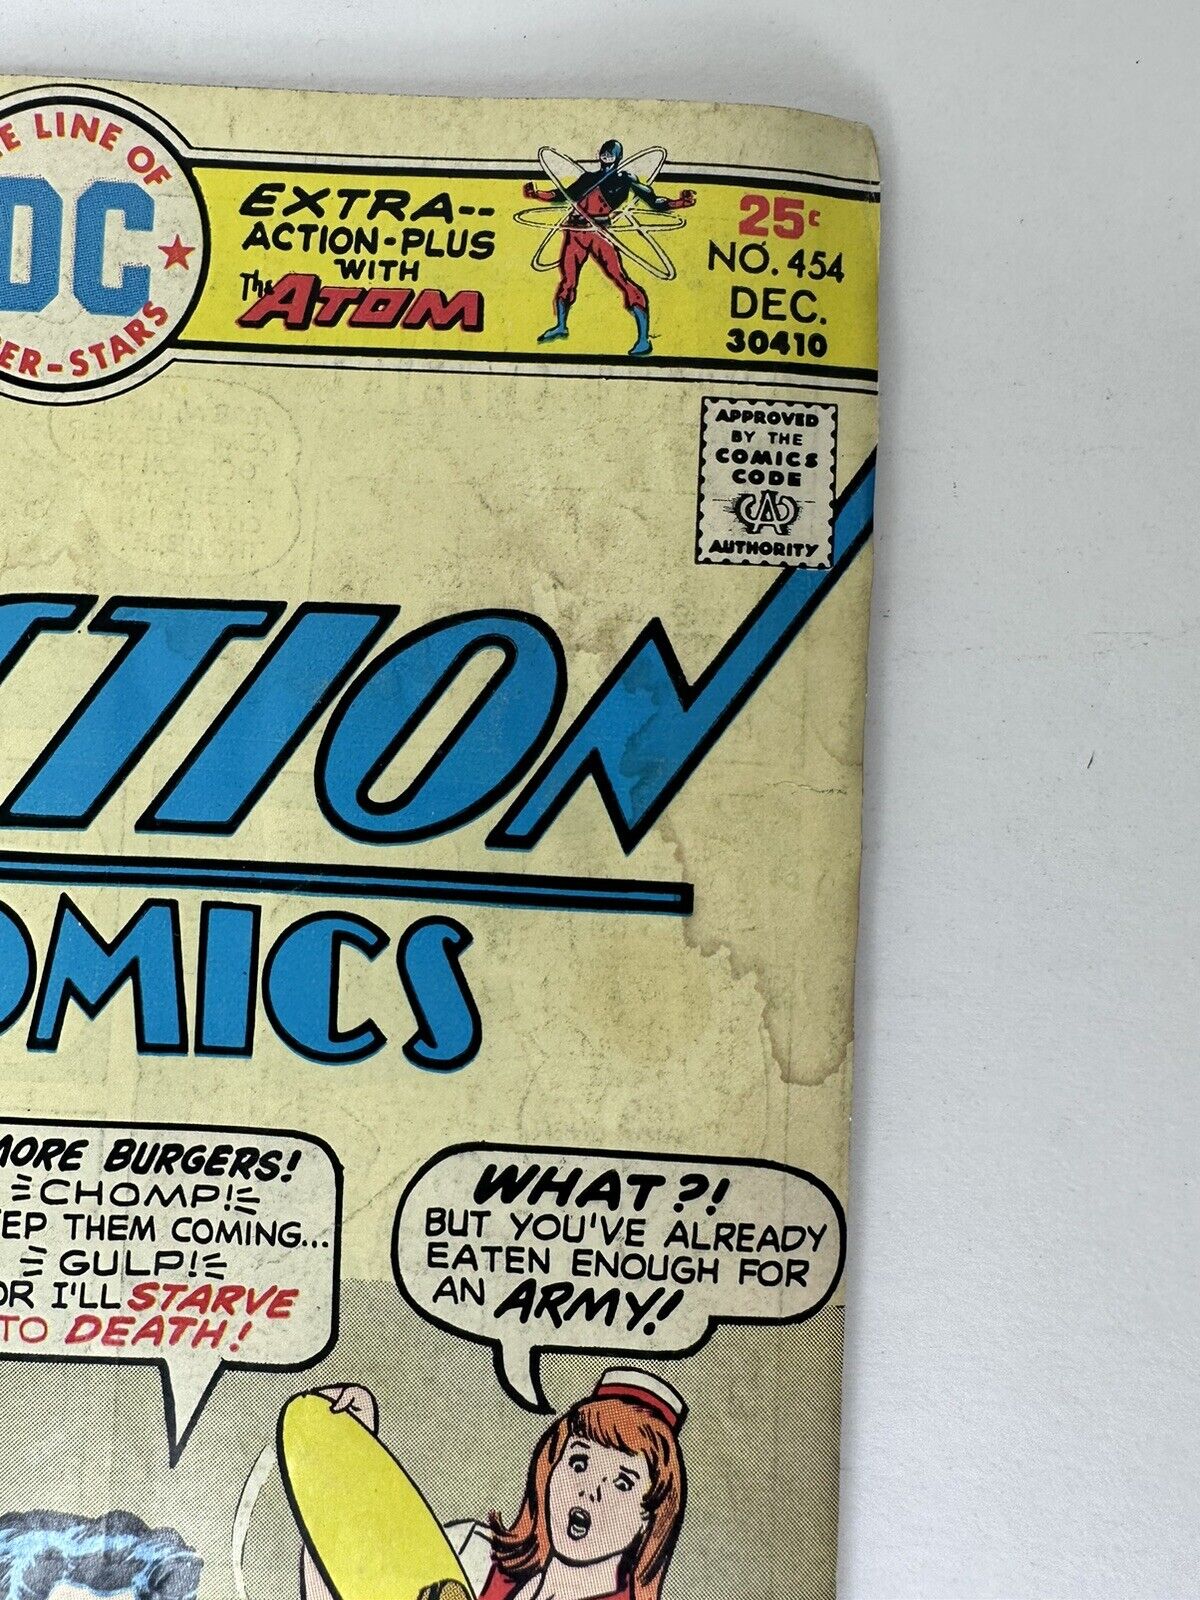 Bronze Age Superman & Superboy Comics Collection - 8 Vintage Marvels - DC Comics Classics - TreasuTiques